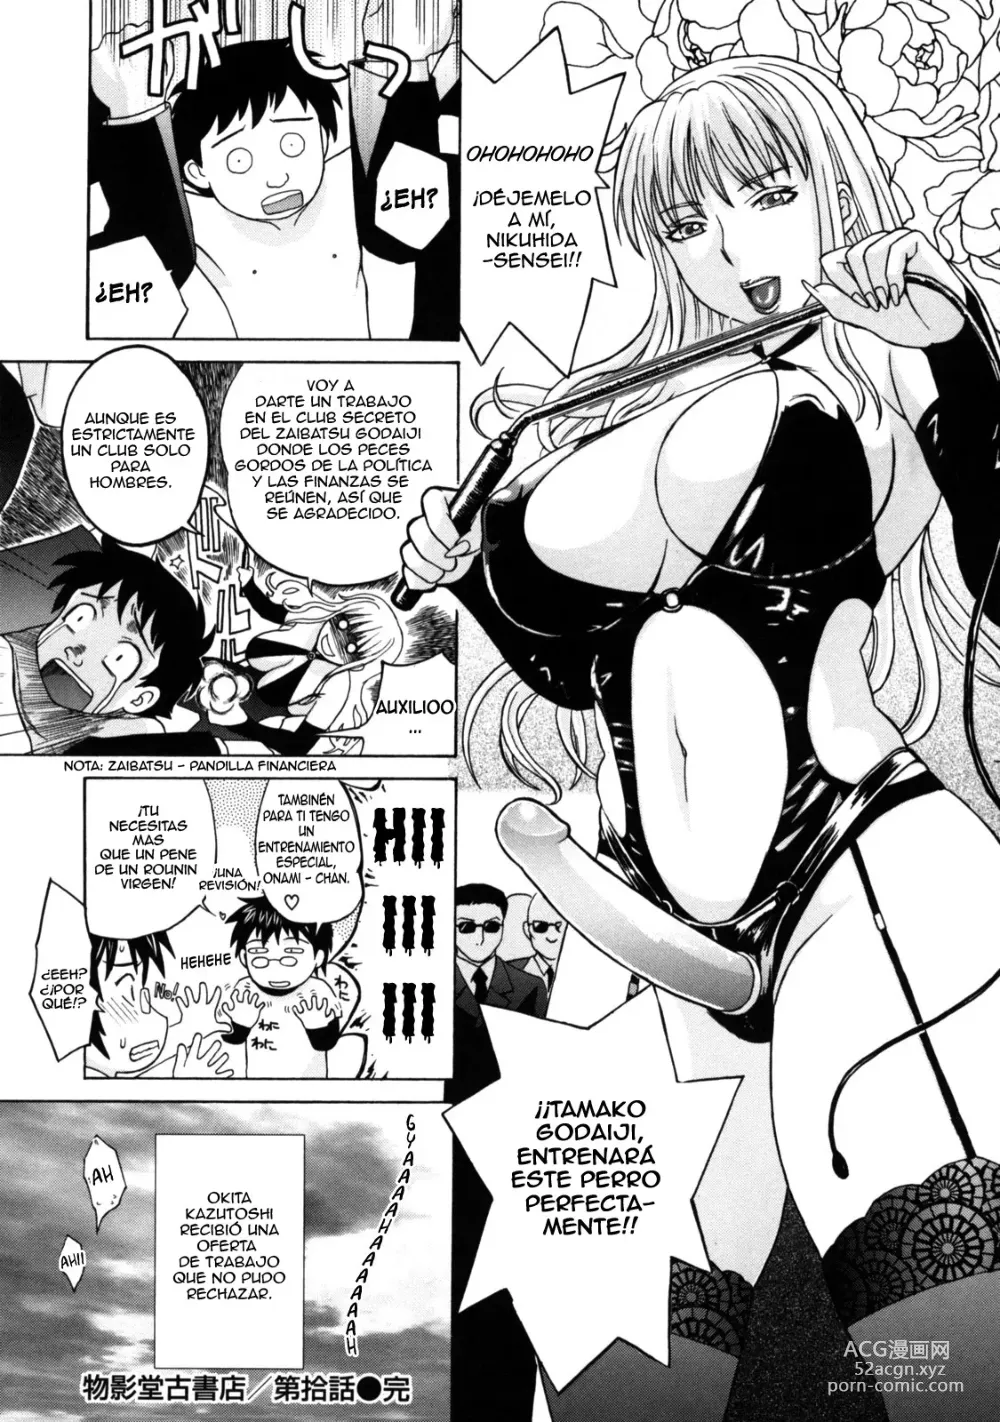 Page 43 of manga Haha no Naku Ie Ch. 17-20